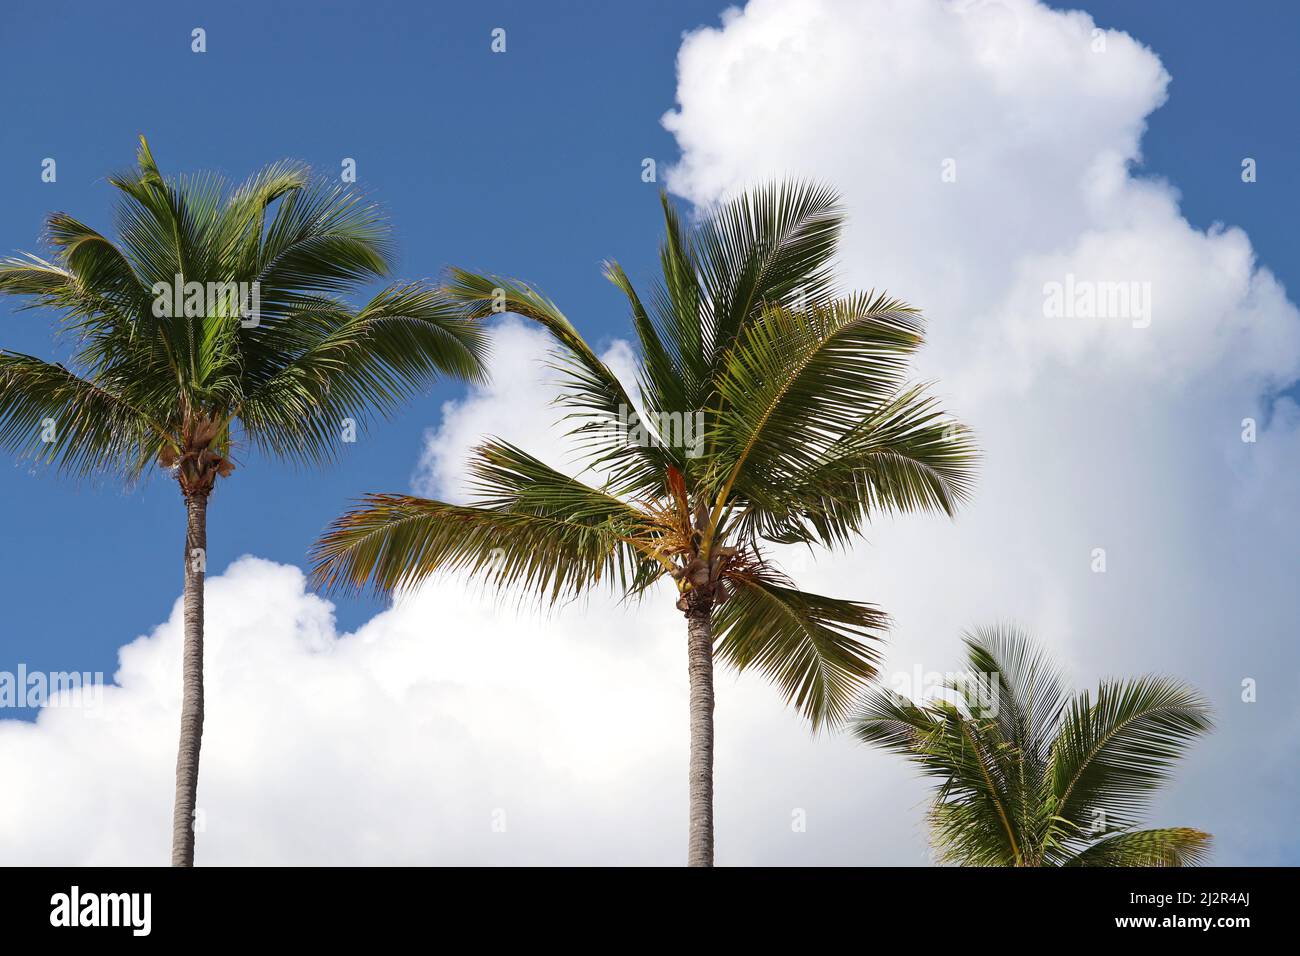 Palmiers à noix de coco contre le ciel bleu et les nuages blancs. Arrière-plan pour des vacances sur la plage tropicale Banque D'Images